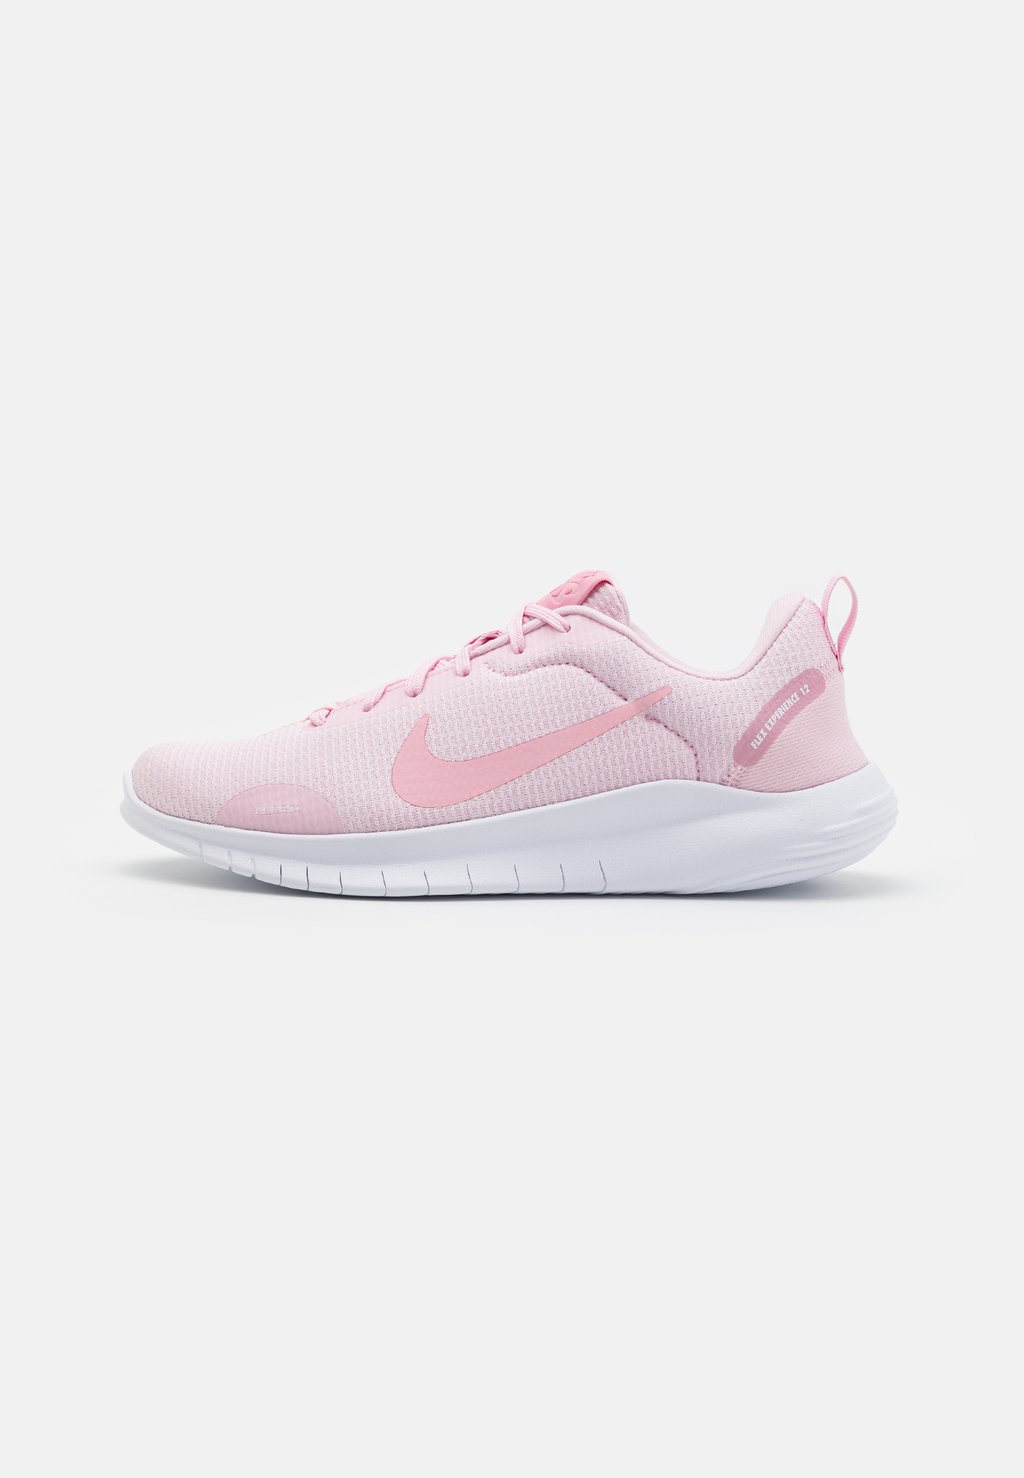 Нейтральные кроссовки FLEX EXPERIENCE RN 12 Nike, цвет pink foam/white/pearl pink/med soft pink простыня soft pink